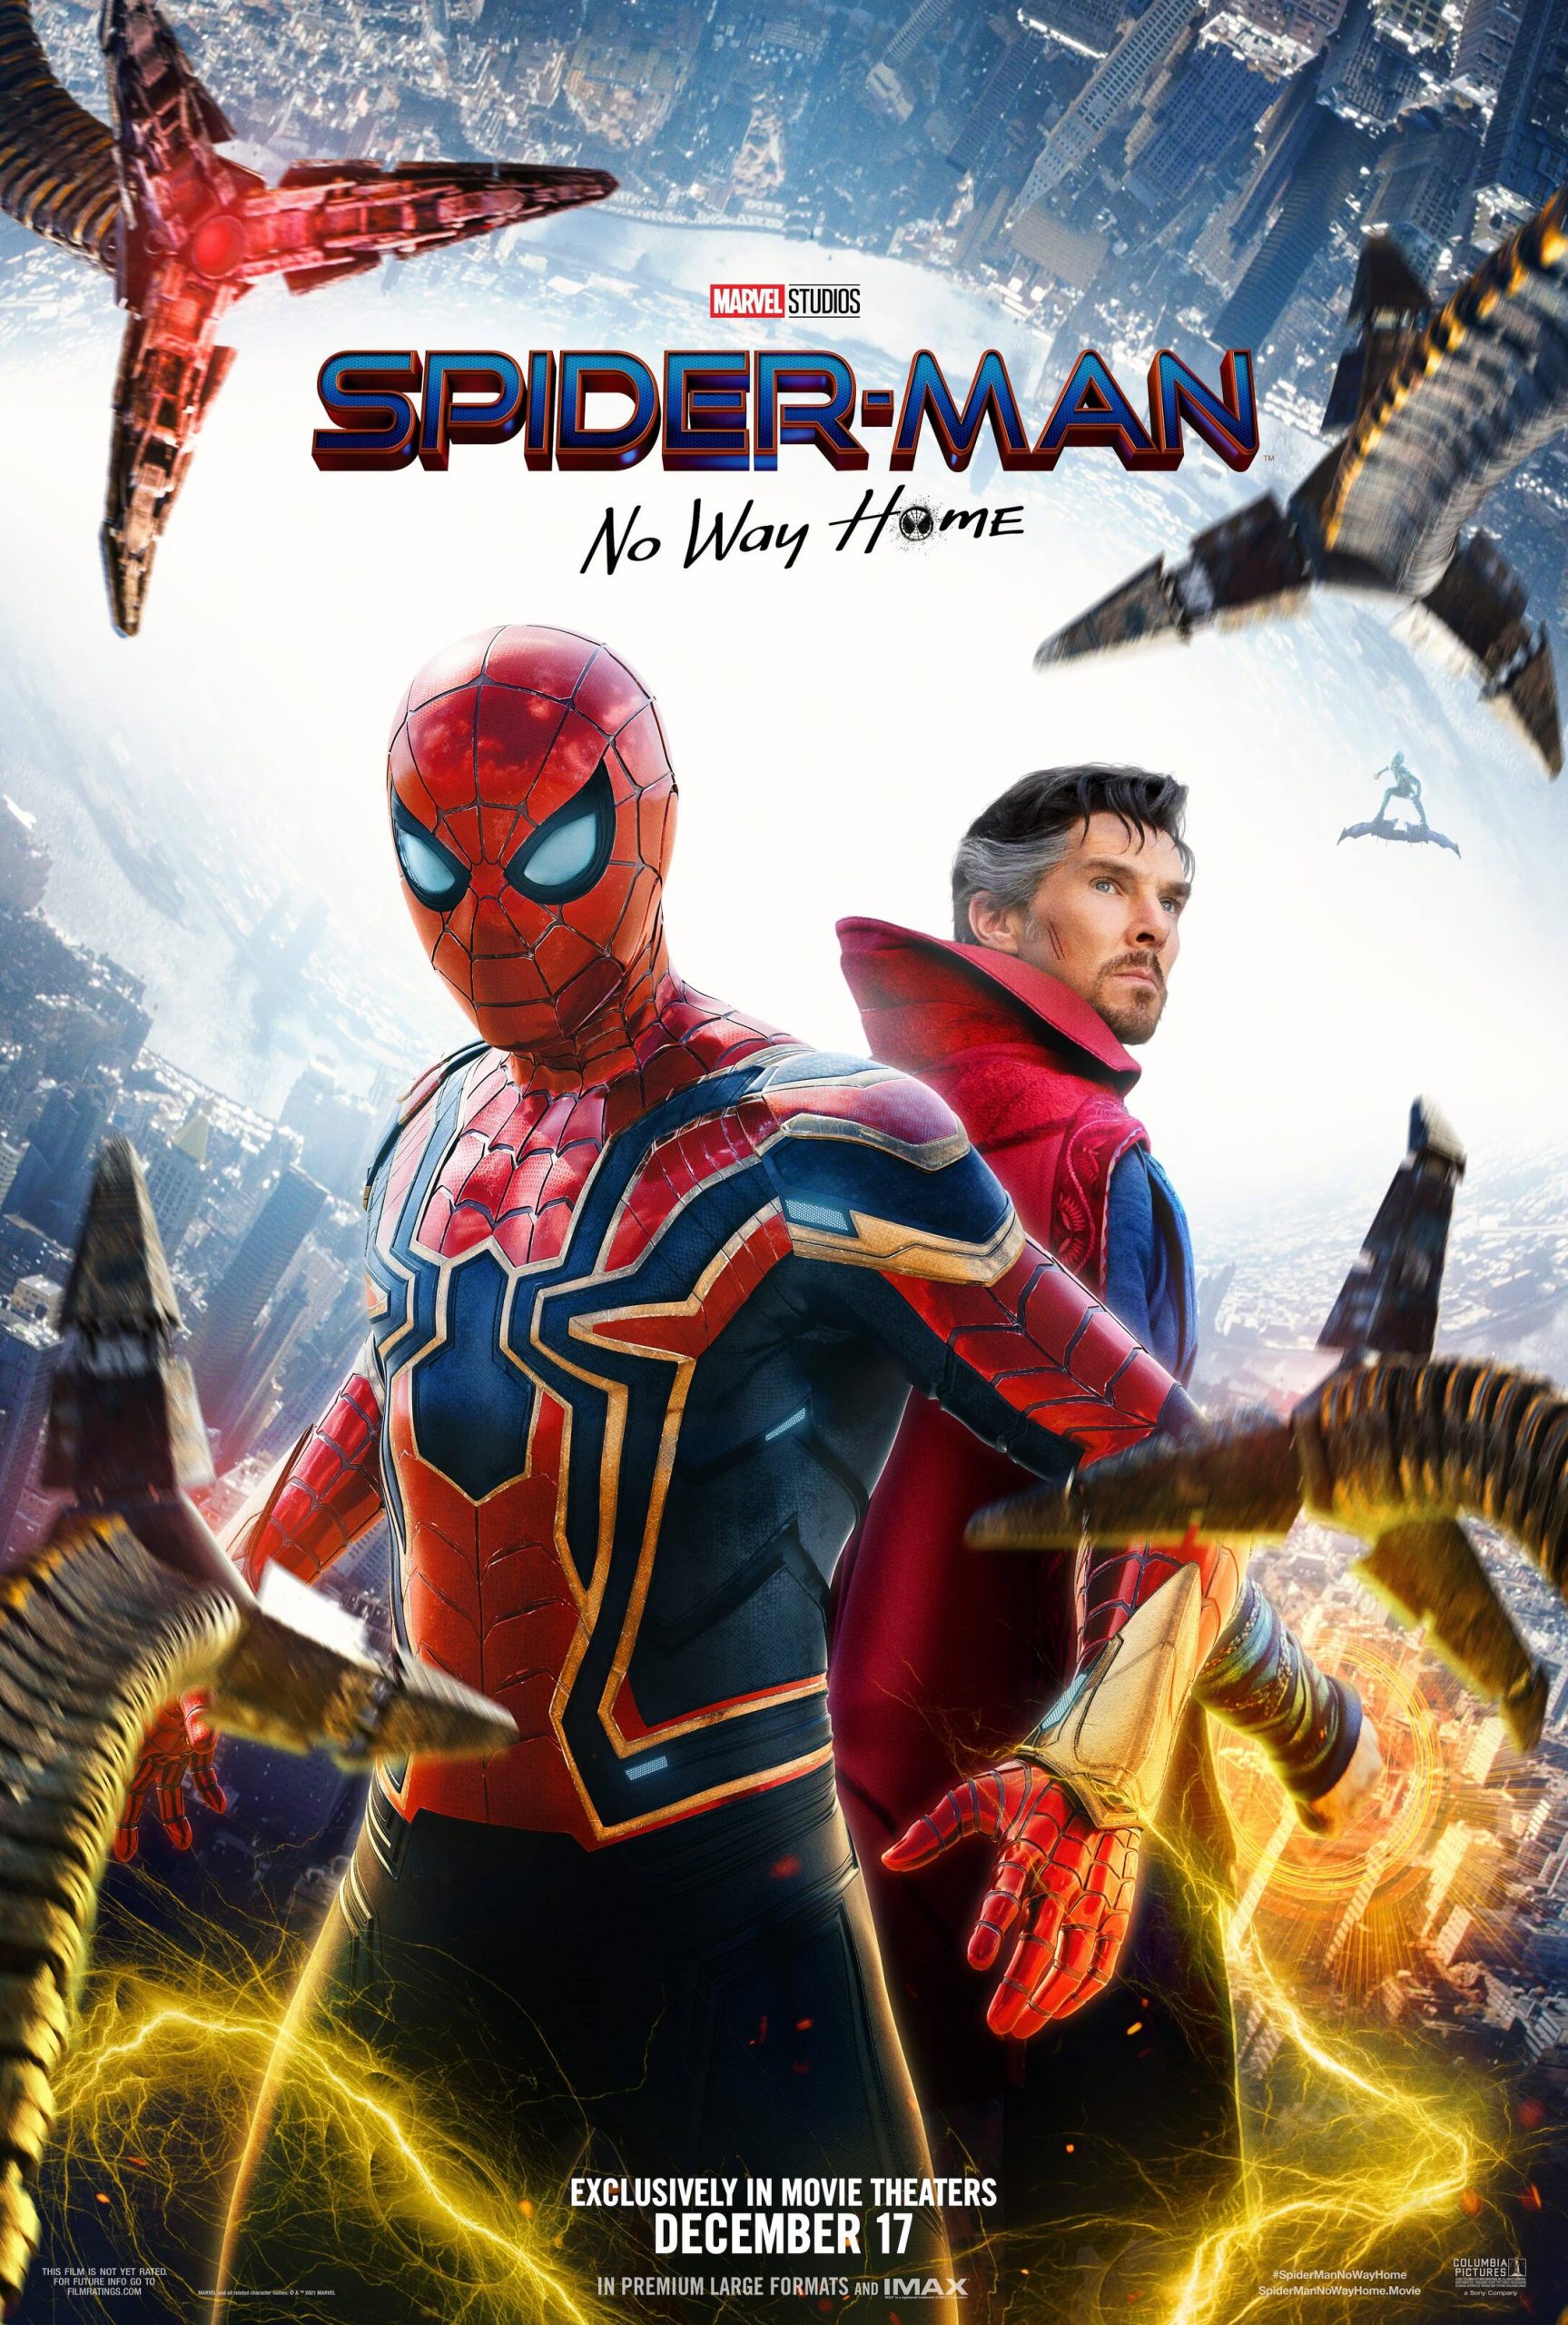 ดูหนังออนไลน์ Spider Man No Way Home (2021) สไปเดอร์แมน โน เวย์ โฮม